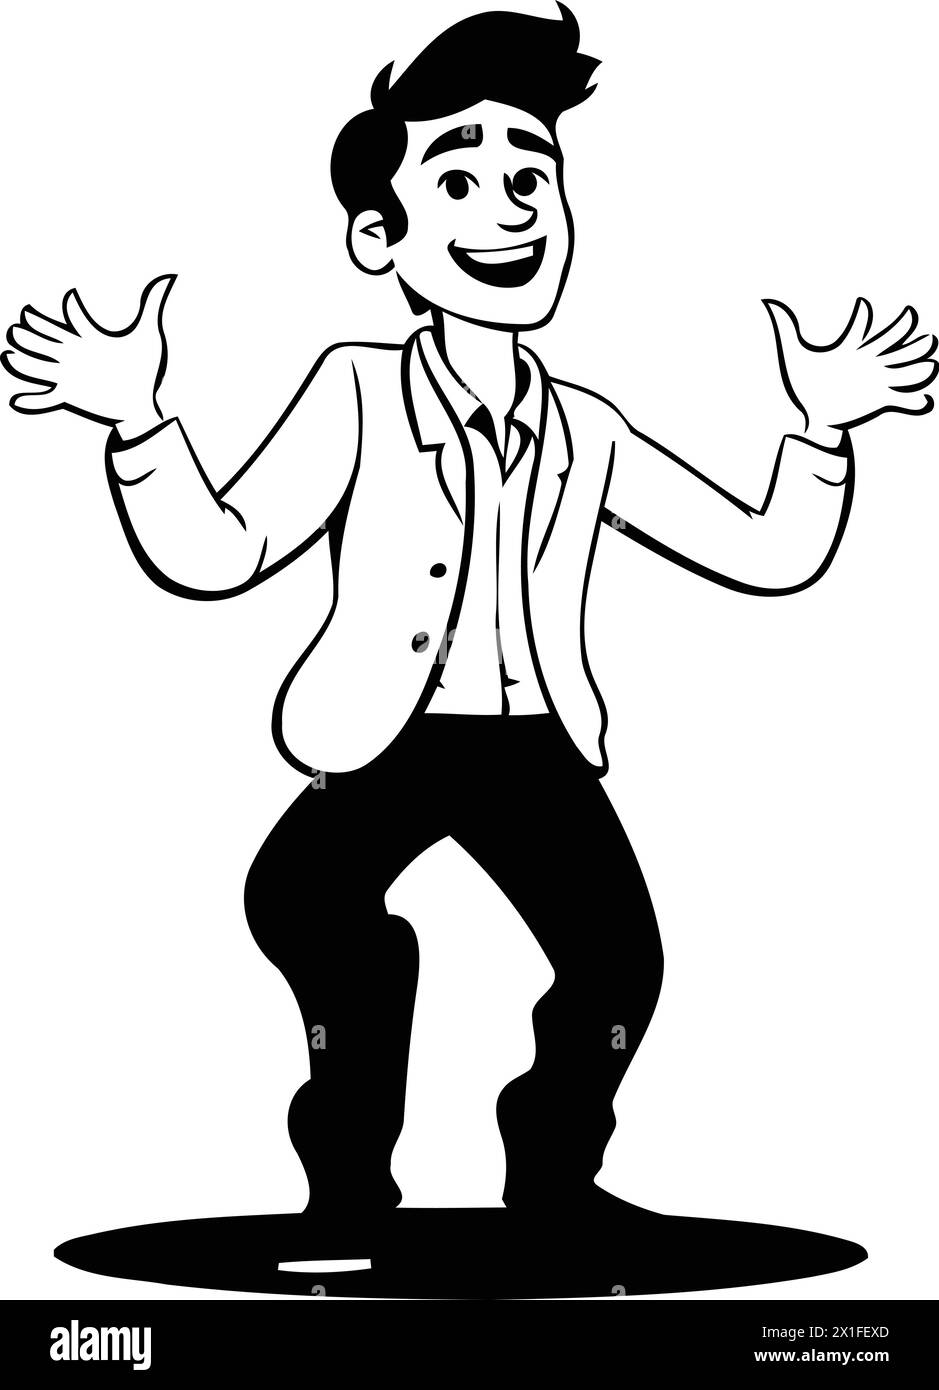 Uomo felice che balla e si diverte. Illustrazione vettoriale in stile cartone animato. Illustrazione Vettoriale